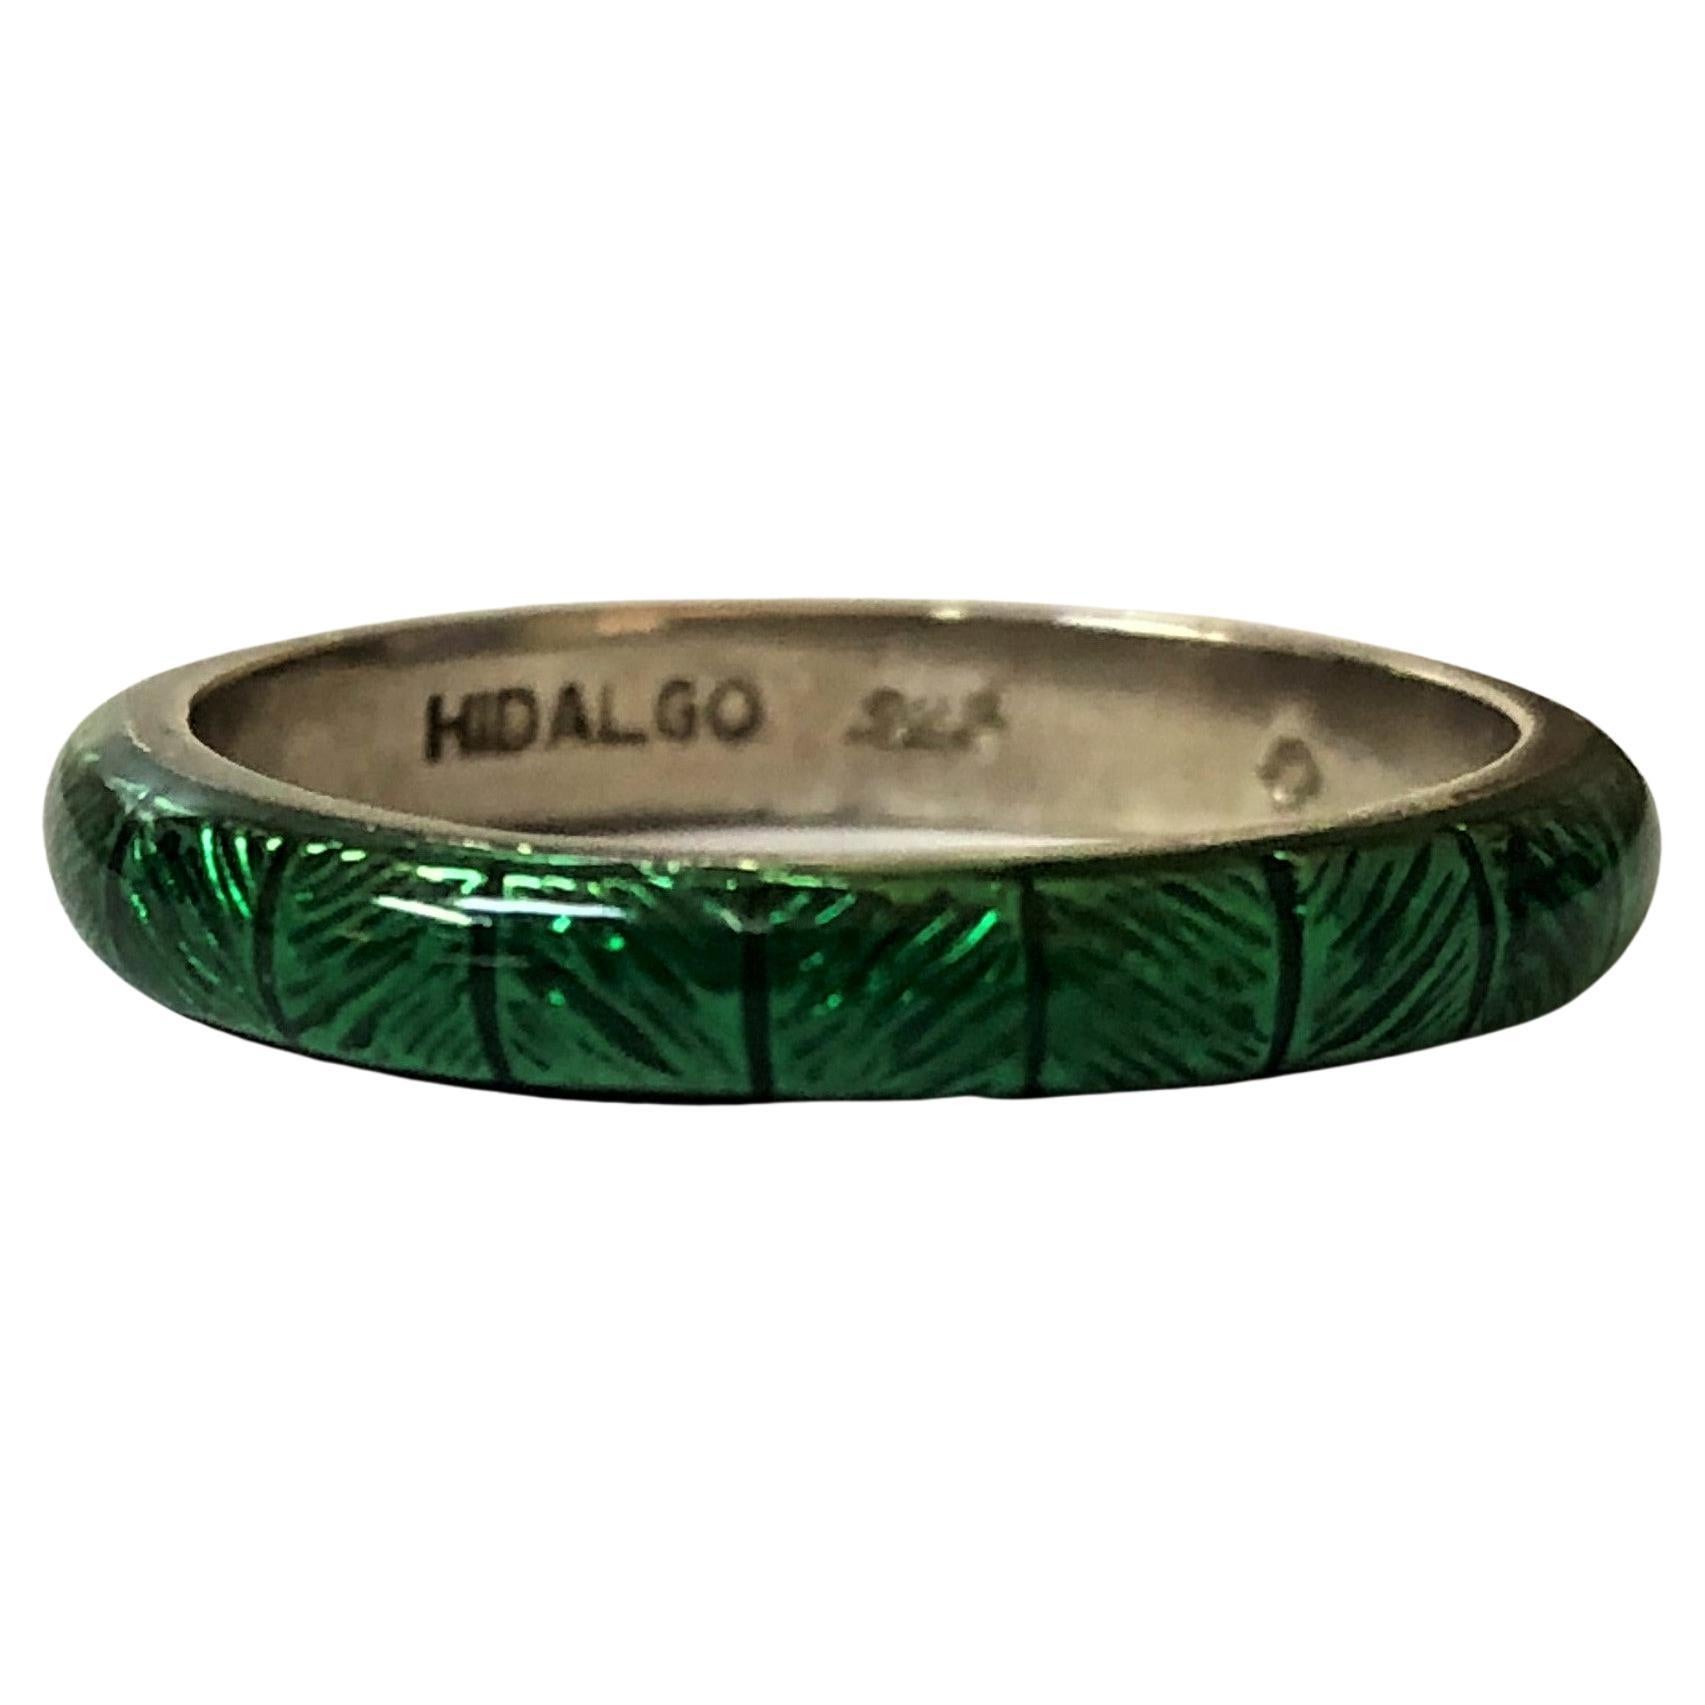 Grüner Emaille-Ring von Hidalgo